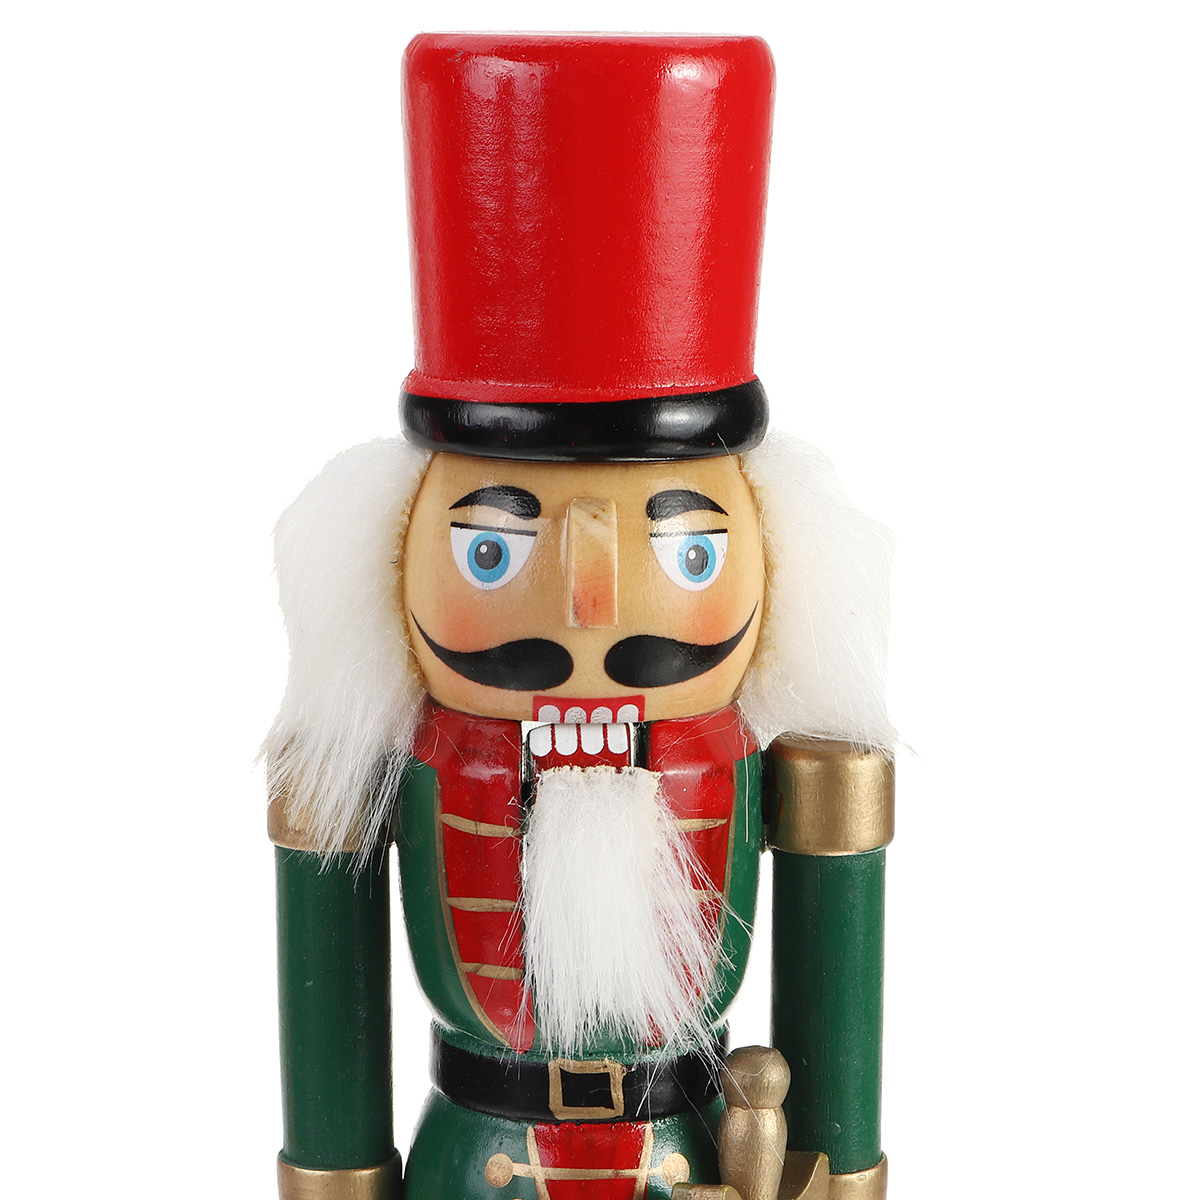 Christmas-Nutcracker-Soldier-Doll--Wooden-Puppet-Vintage-Desktop-Ornaments-25cm-Festival-Decoration-1767883-10